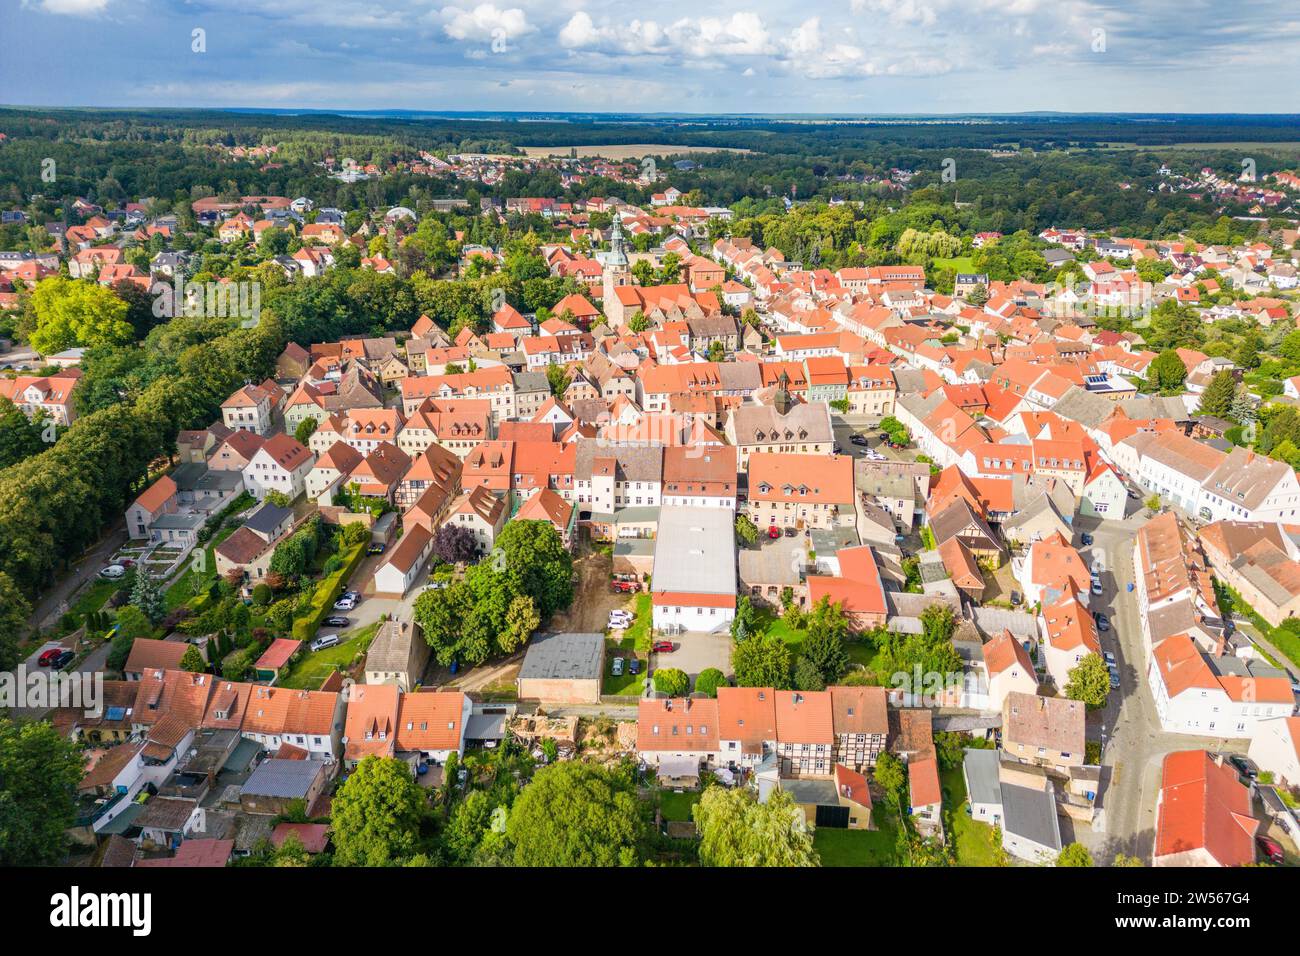 Vue aérienne, photo drone : station thermale de Bad Belzig, parc naturel de Hoher Flaeming, Brandebourg, Allemagne Banque D'Images